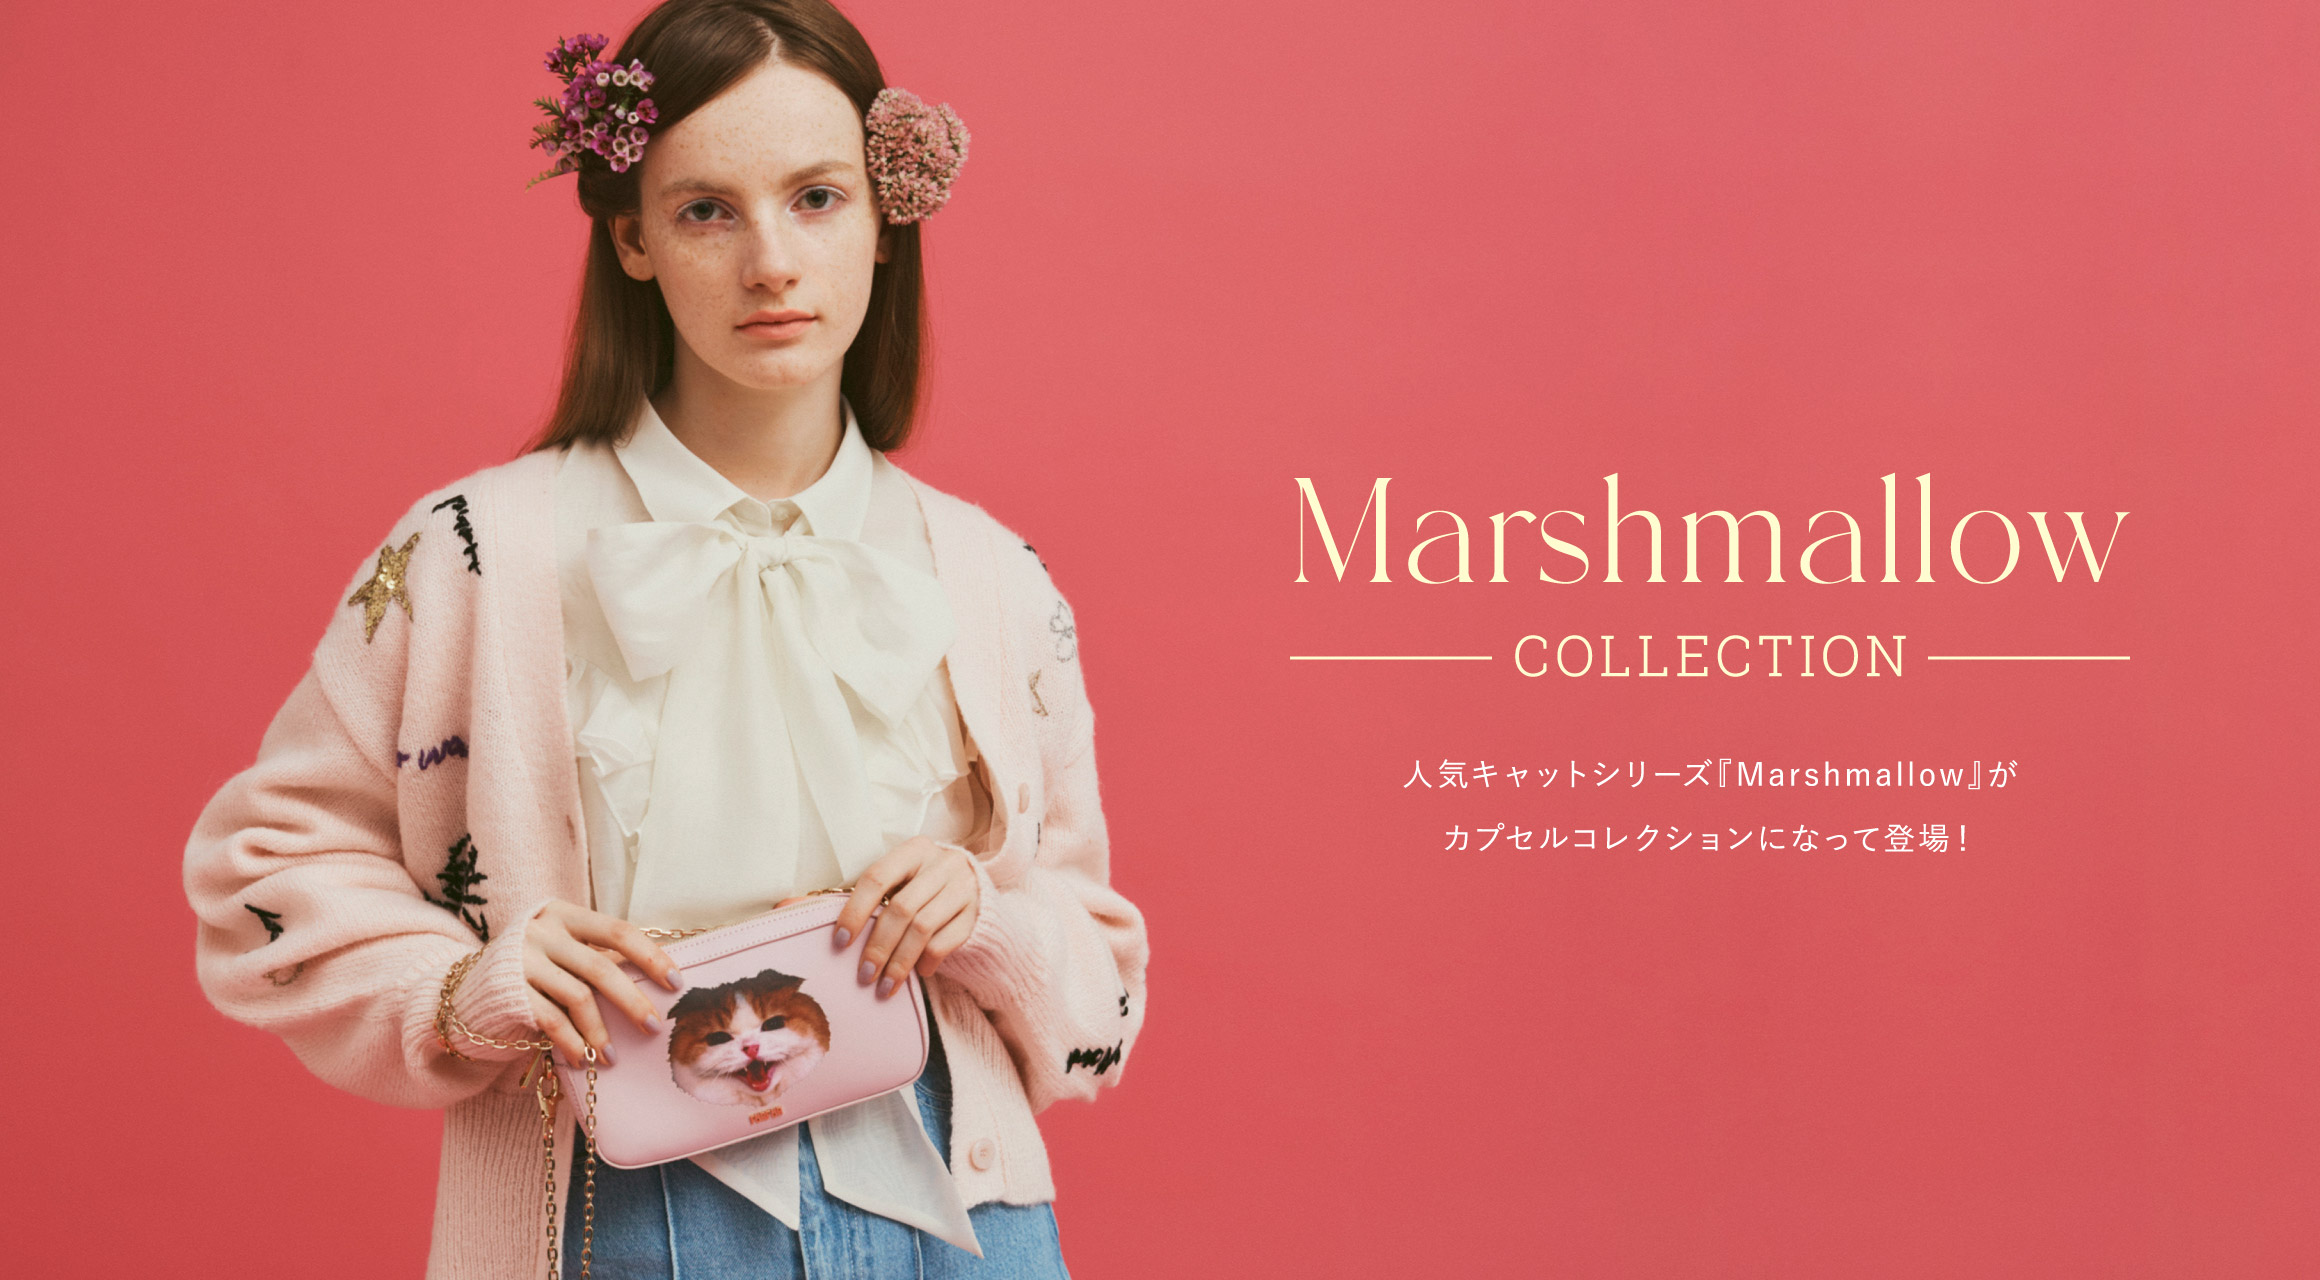 Marshmallow COLLECTION 人気キャットシリーズ『Marshmallow』がカプセルコレクションになって登場！